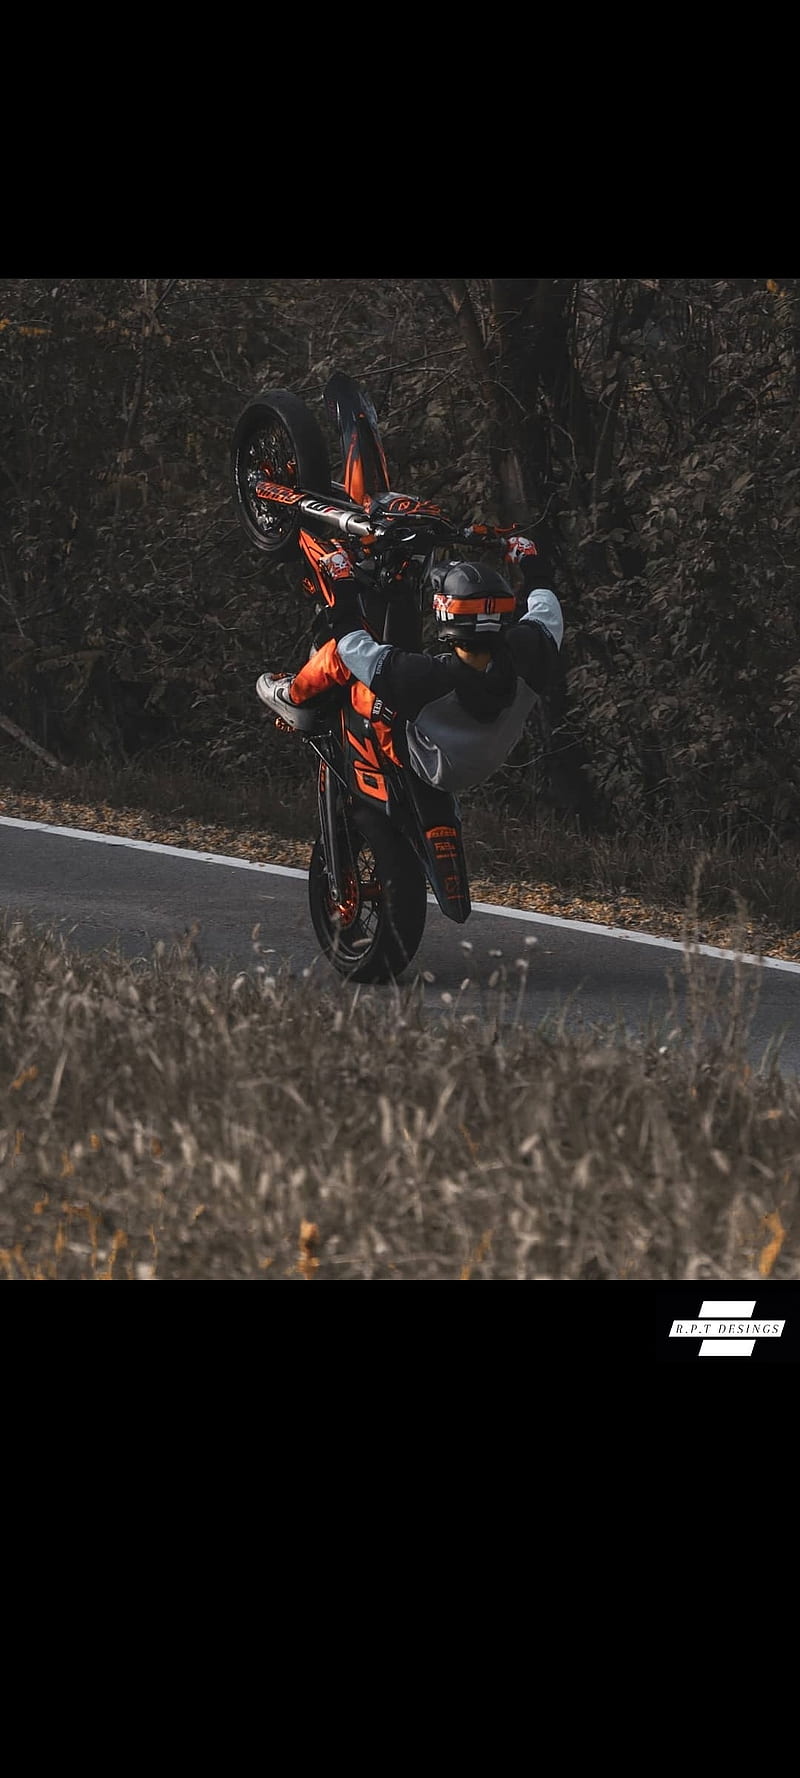 Imágenes para pintar de motos, Fondos de pantalla de Motos